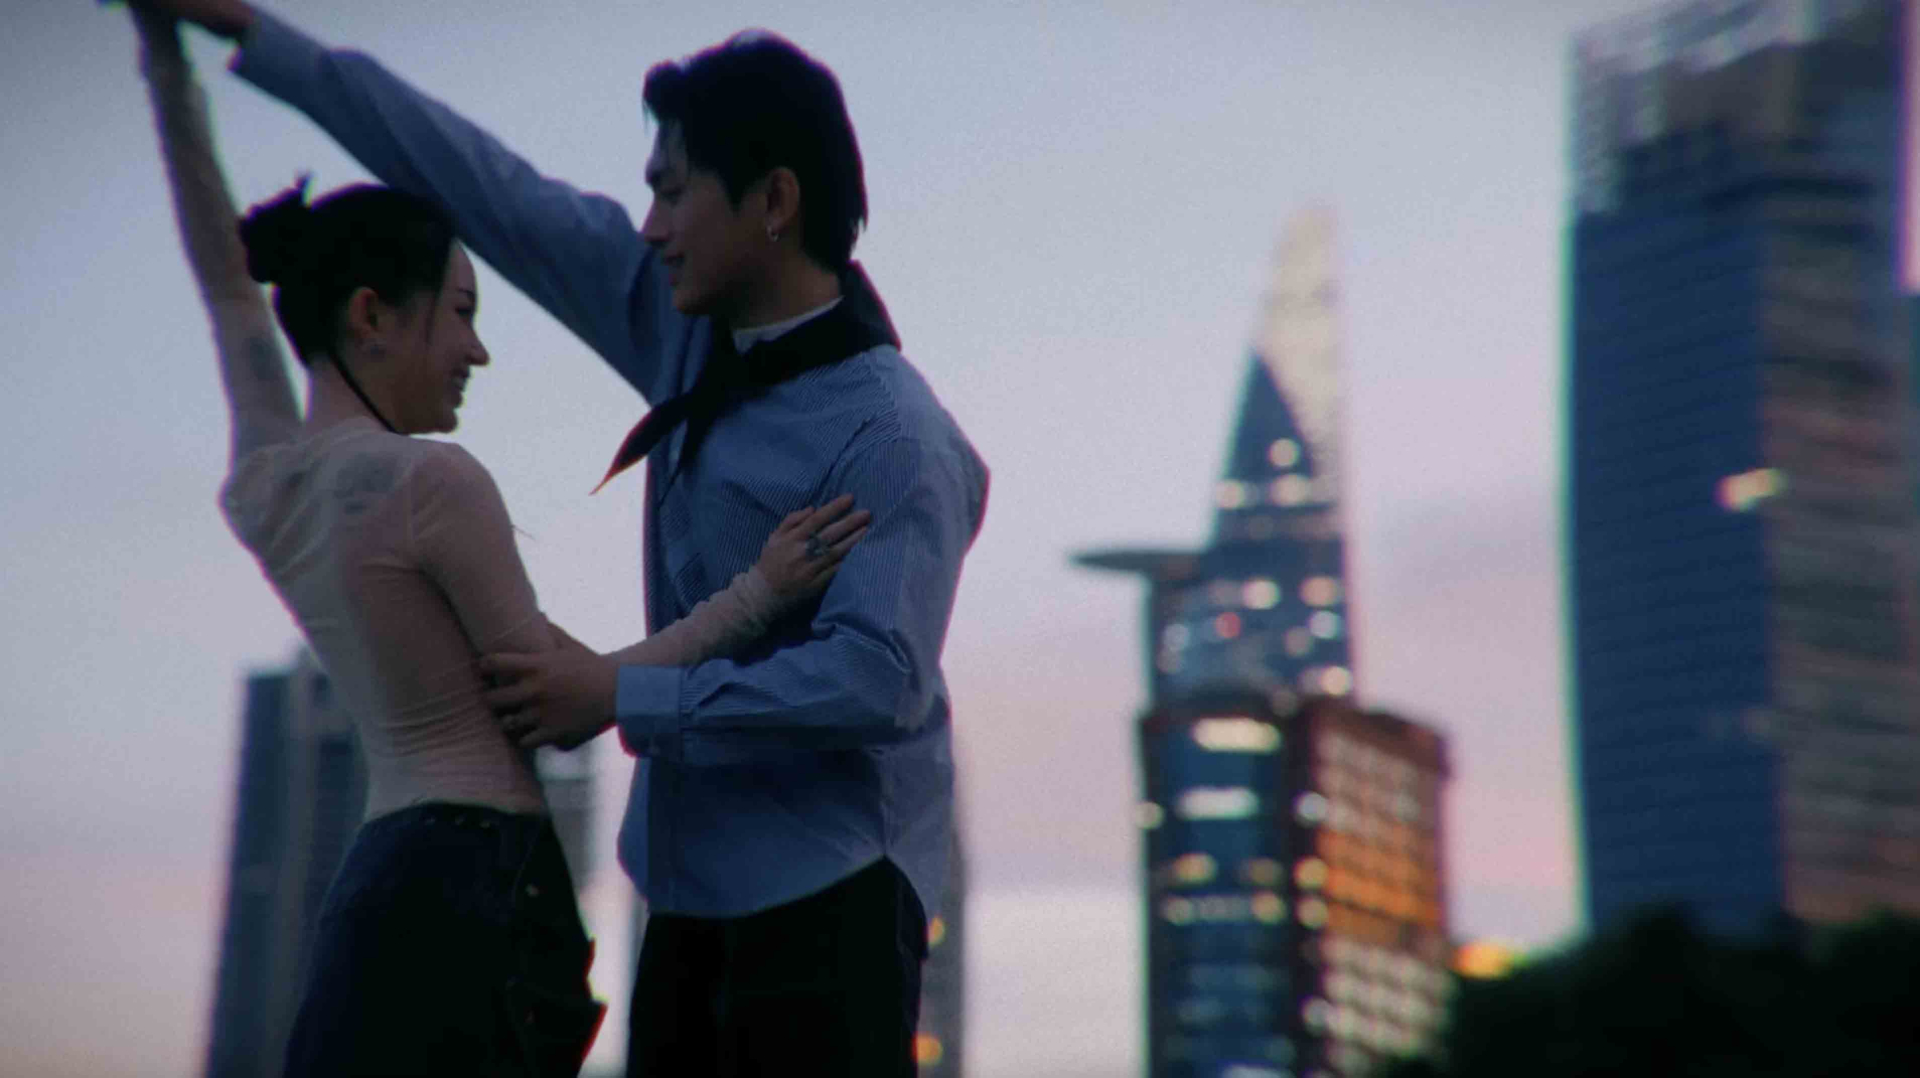 GREY D và Linh Ngọc Đàm nhá hàng loạt cảnh “nóng” trong Teaser MV ‘nhạt-fine’ - ảnh 2